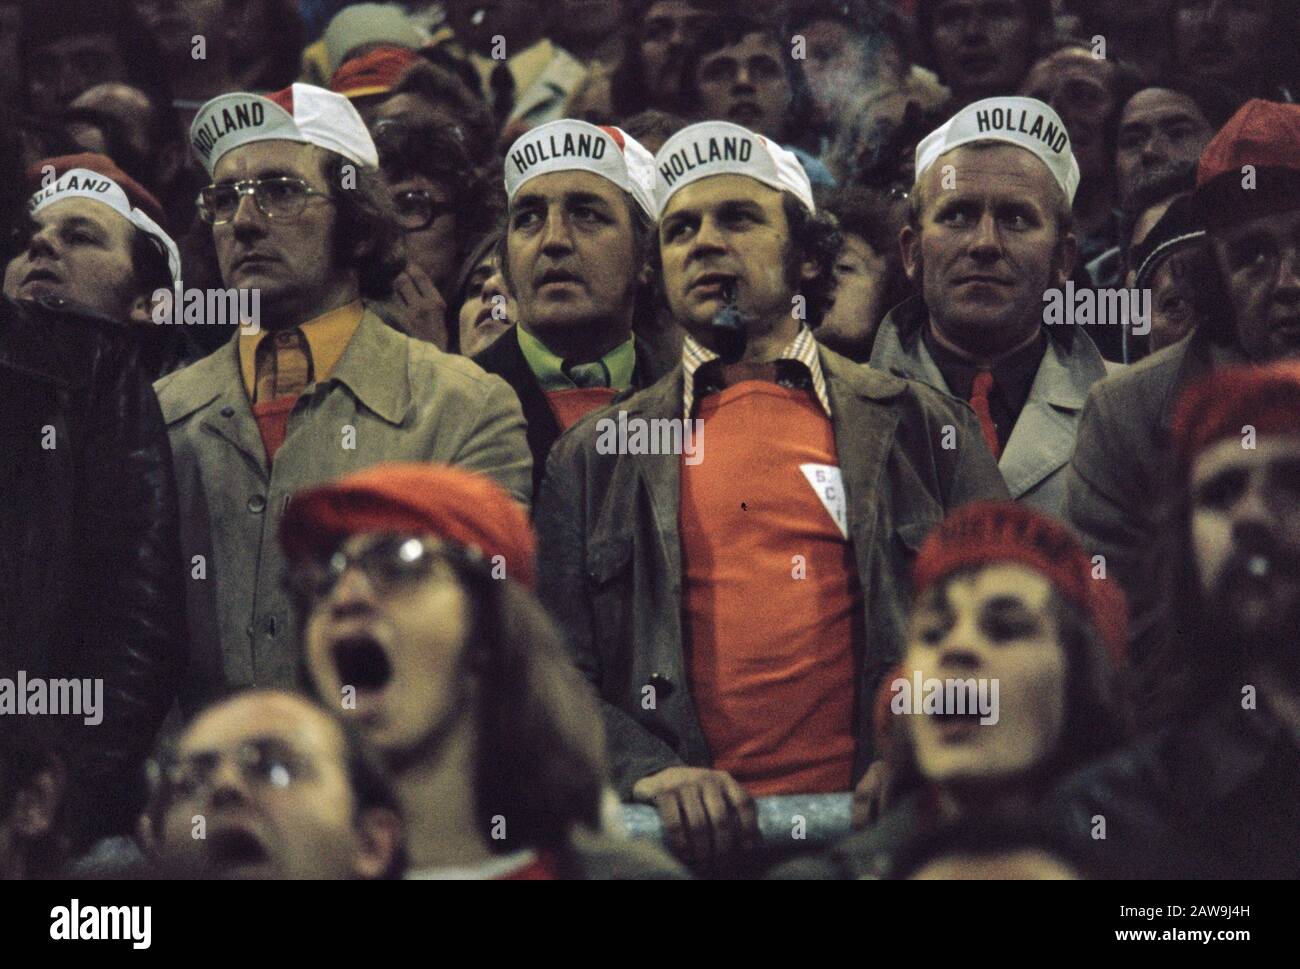 Niederländische Fans während der Fußball-Weltmeisterschaft 1974 Datum: 30. April 1974 Schlagwörter: Anhänger, WELTMEISTERSCHAFTEN, Sport, Fußball Stockfoto